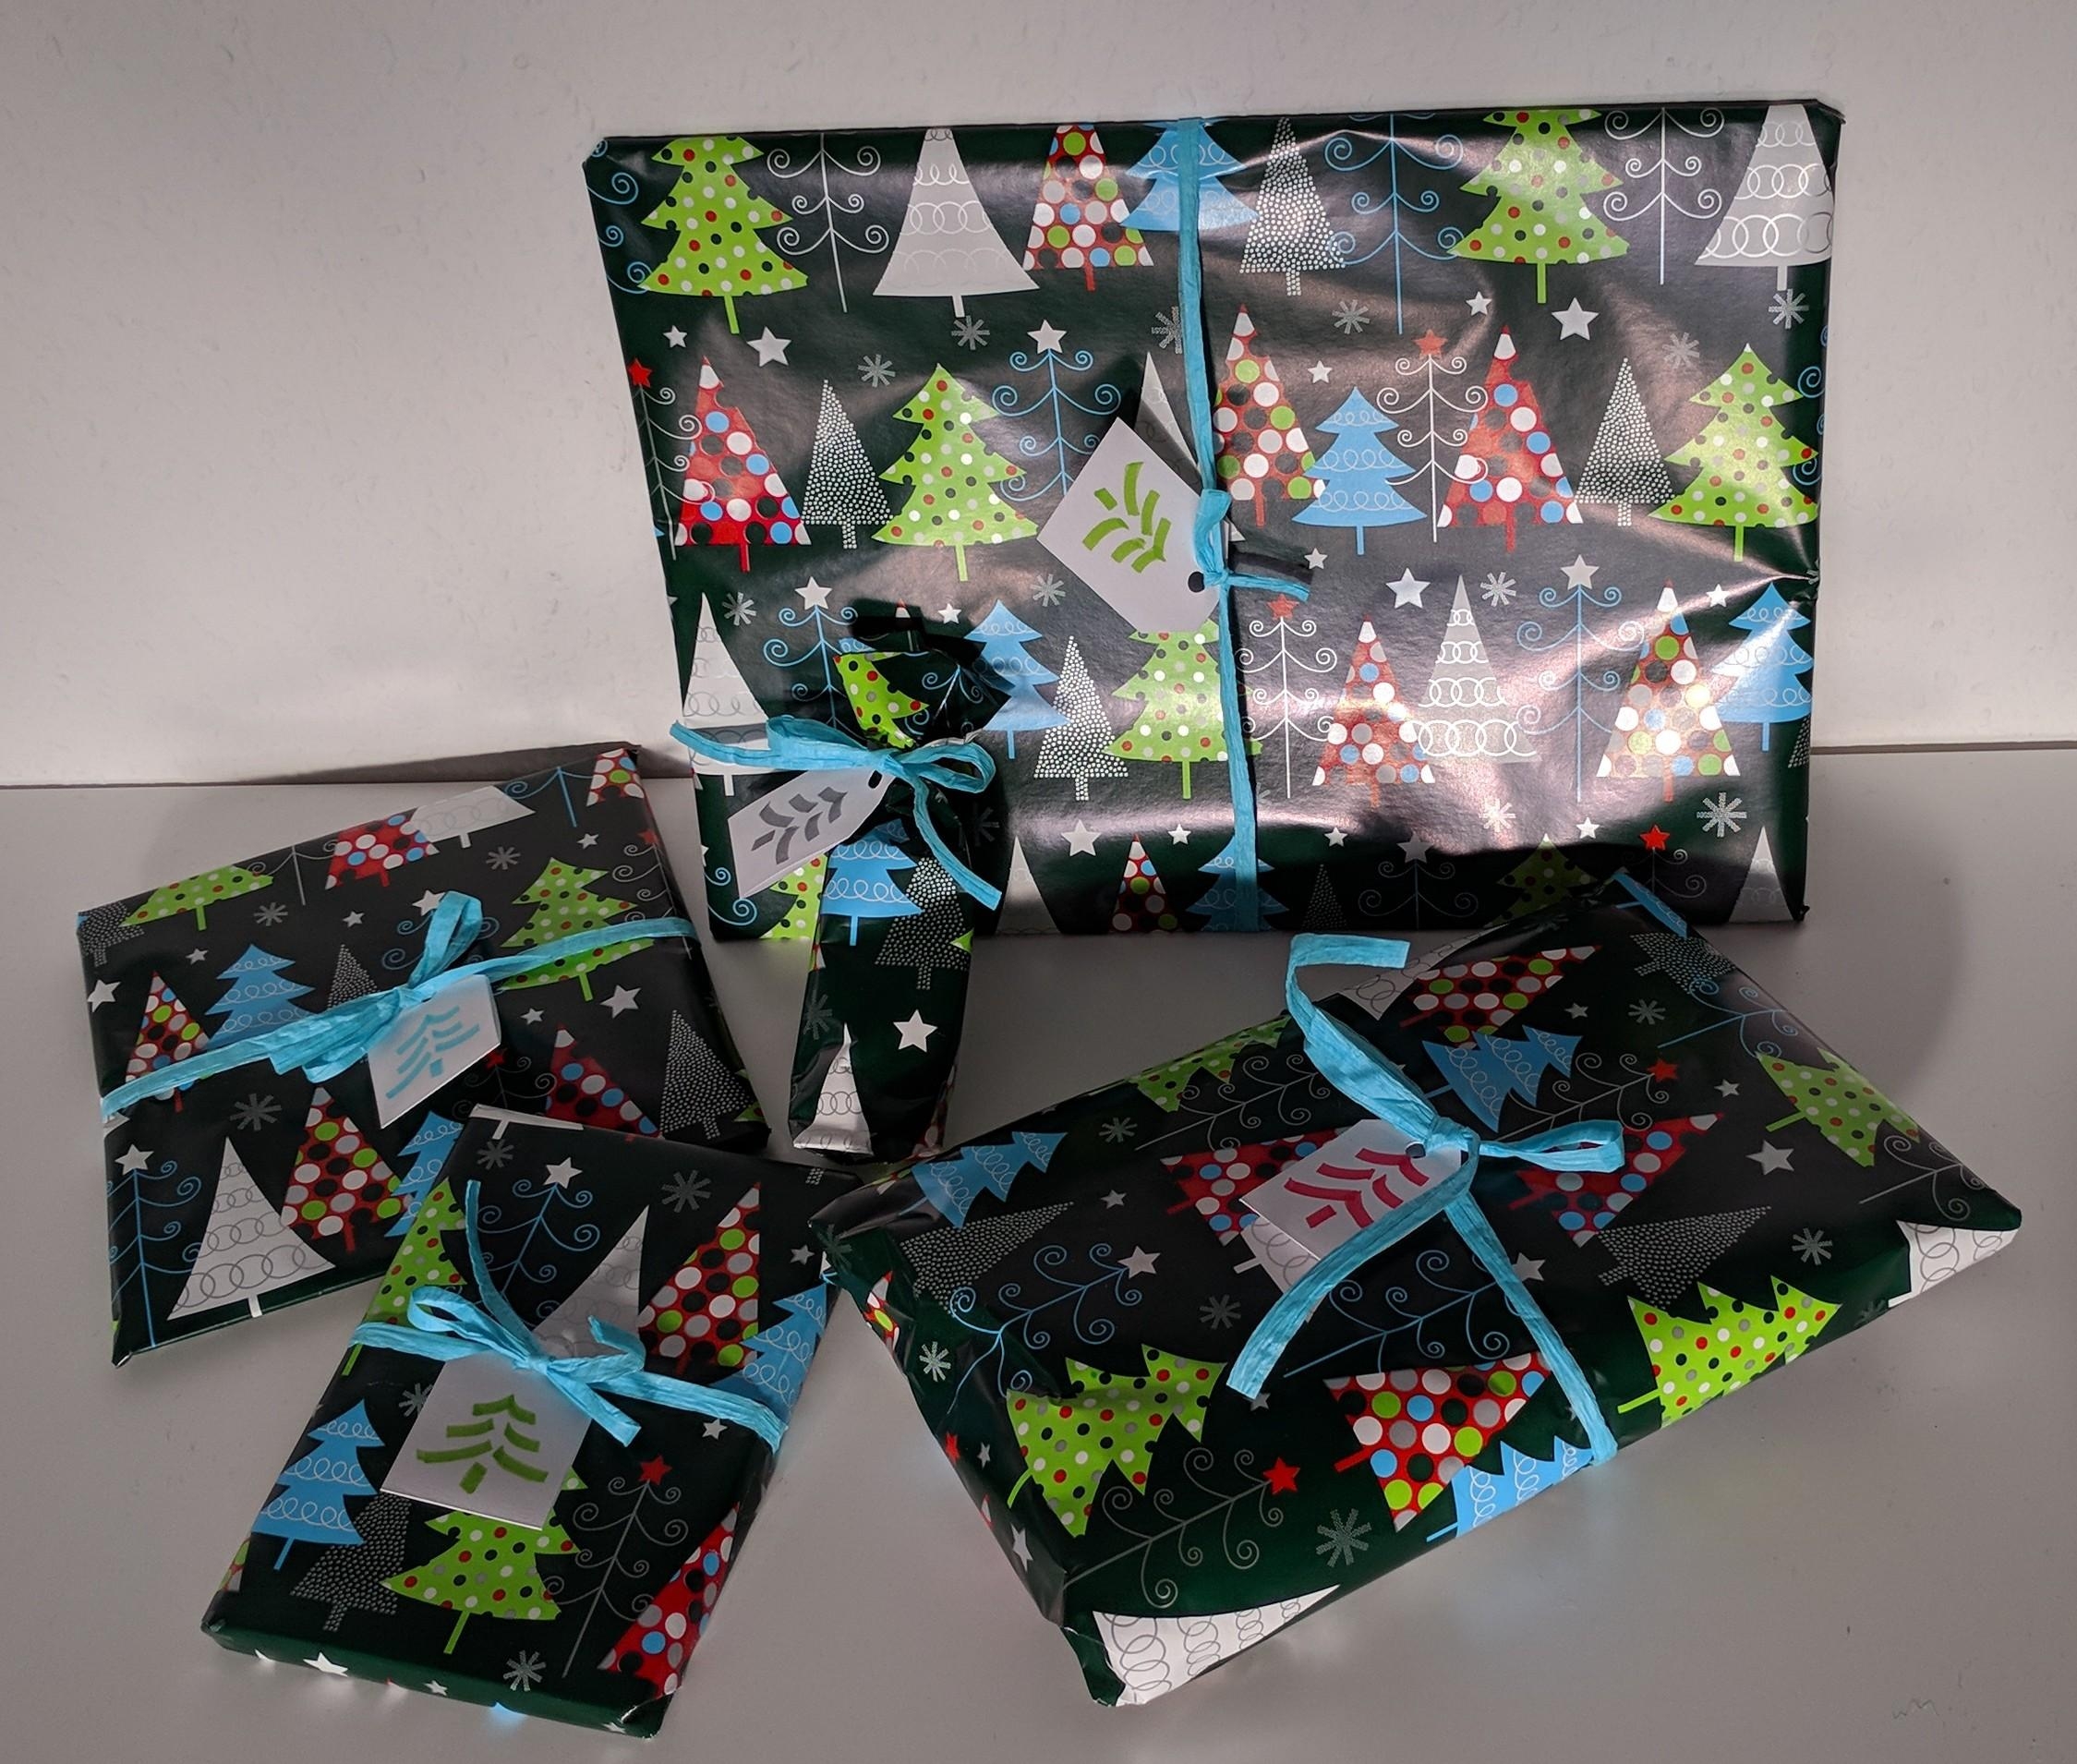 Die Geschenke und ich sind dann so weit: Weihnachten kann von mir aus kommen #geschenke #verpackung #weihnachten